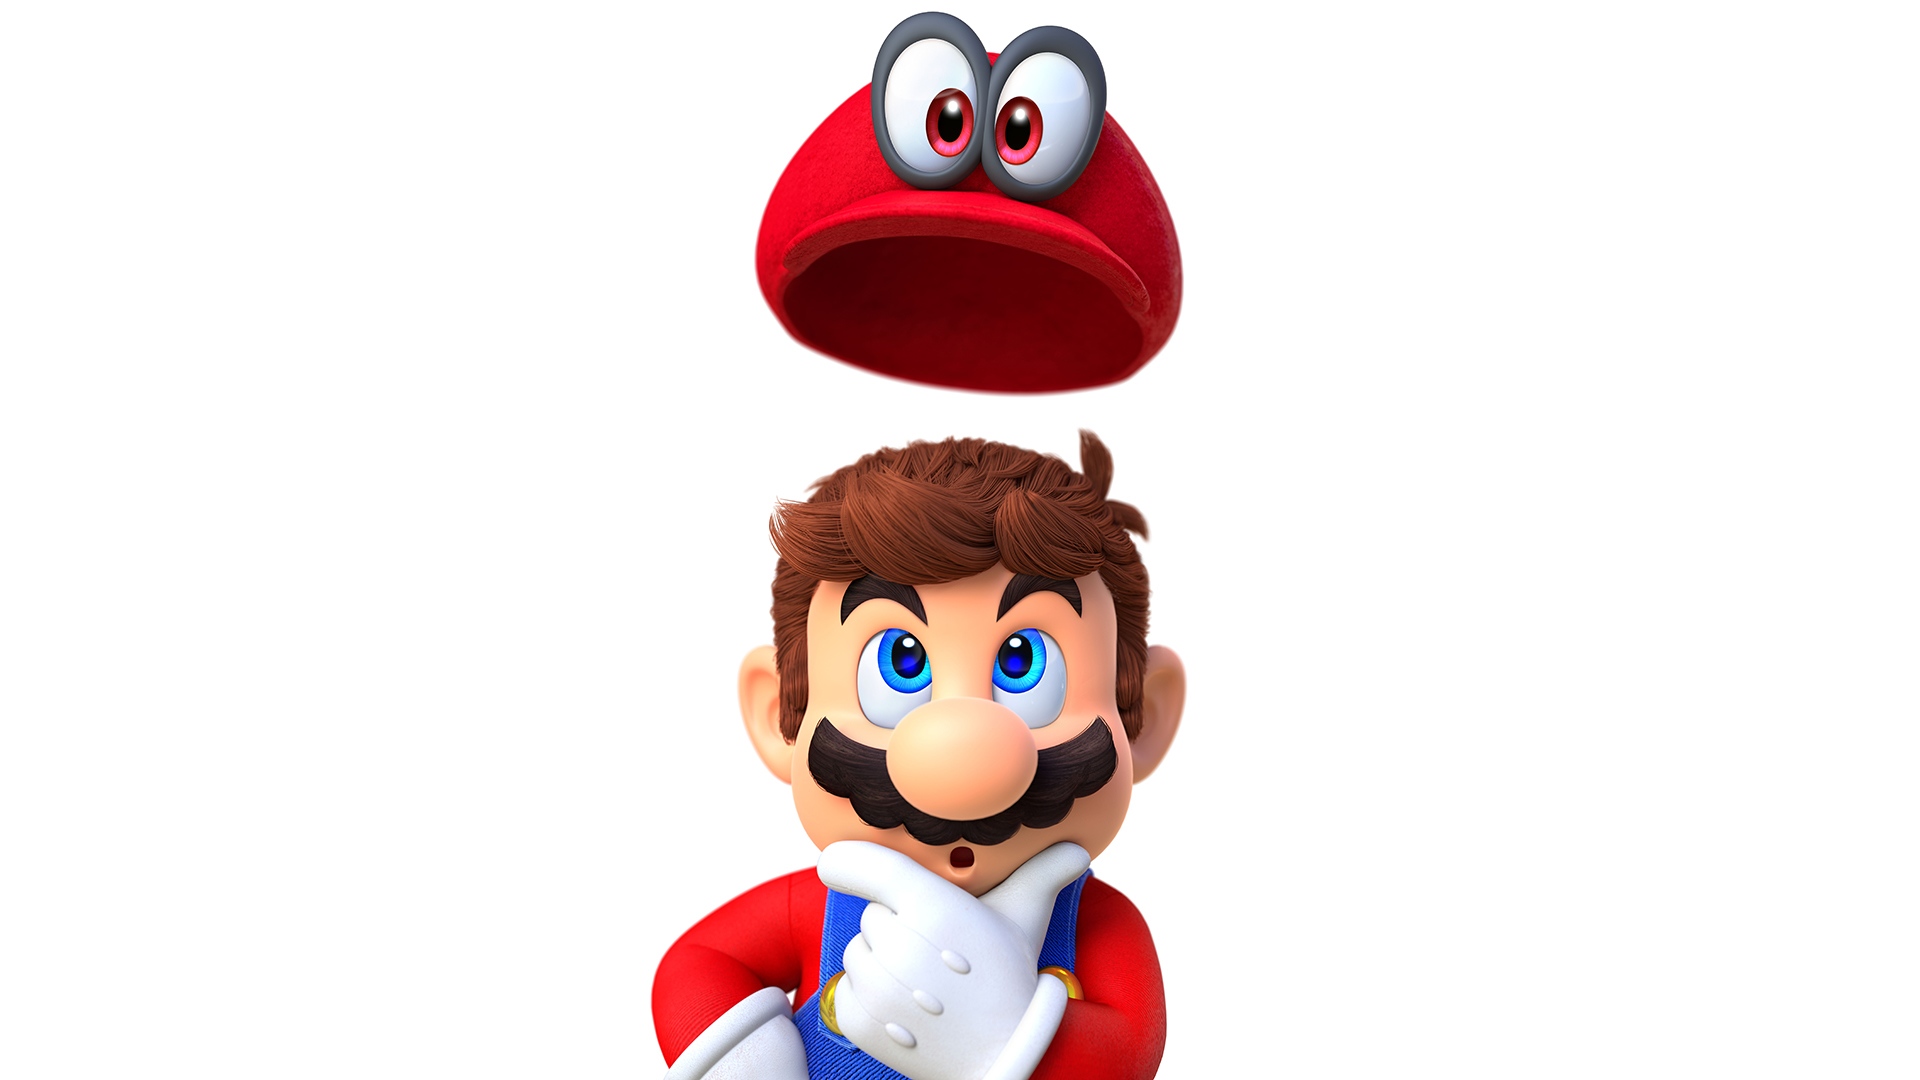 Mario Super Mario Odyssey 1920x1080